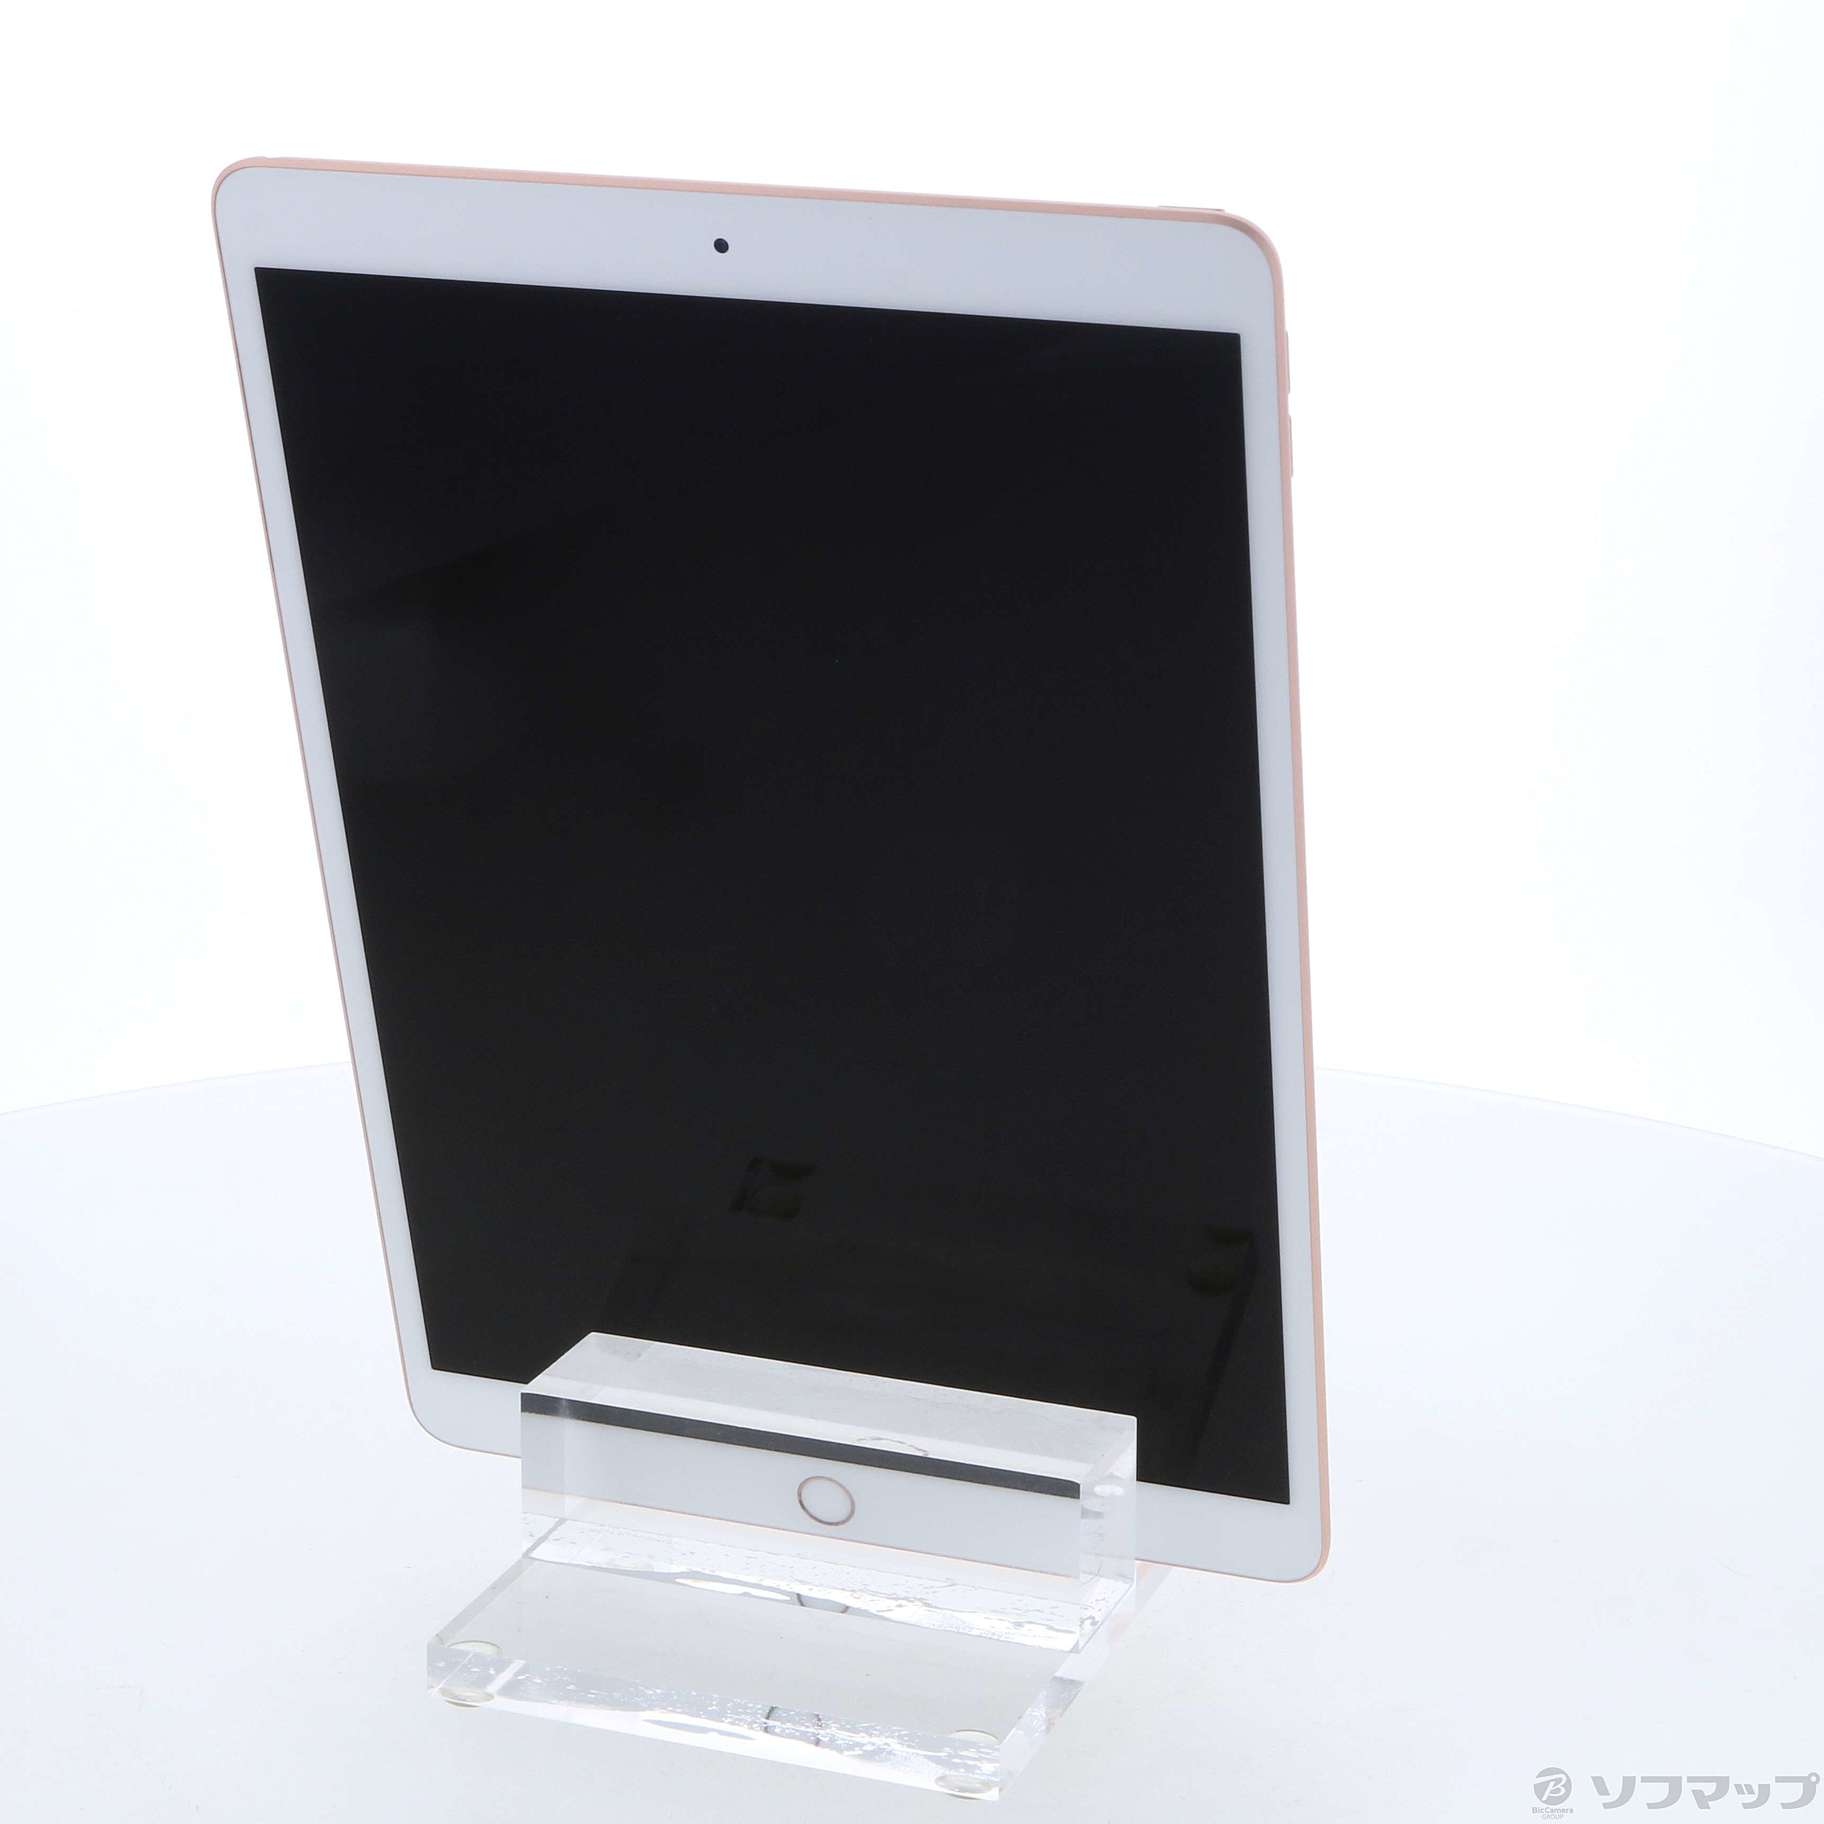 新品・未開封 MUUL2J/A Apple iPad Air 3 gold